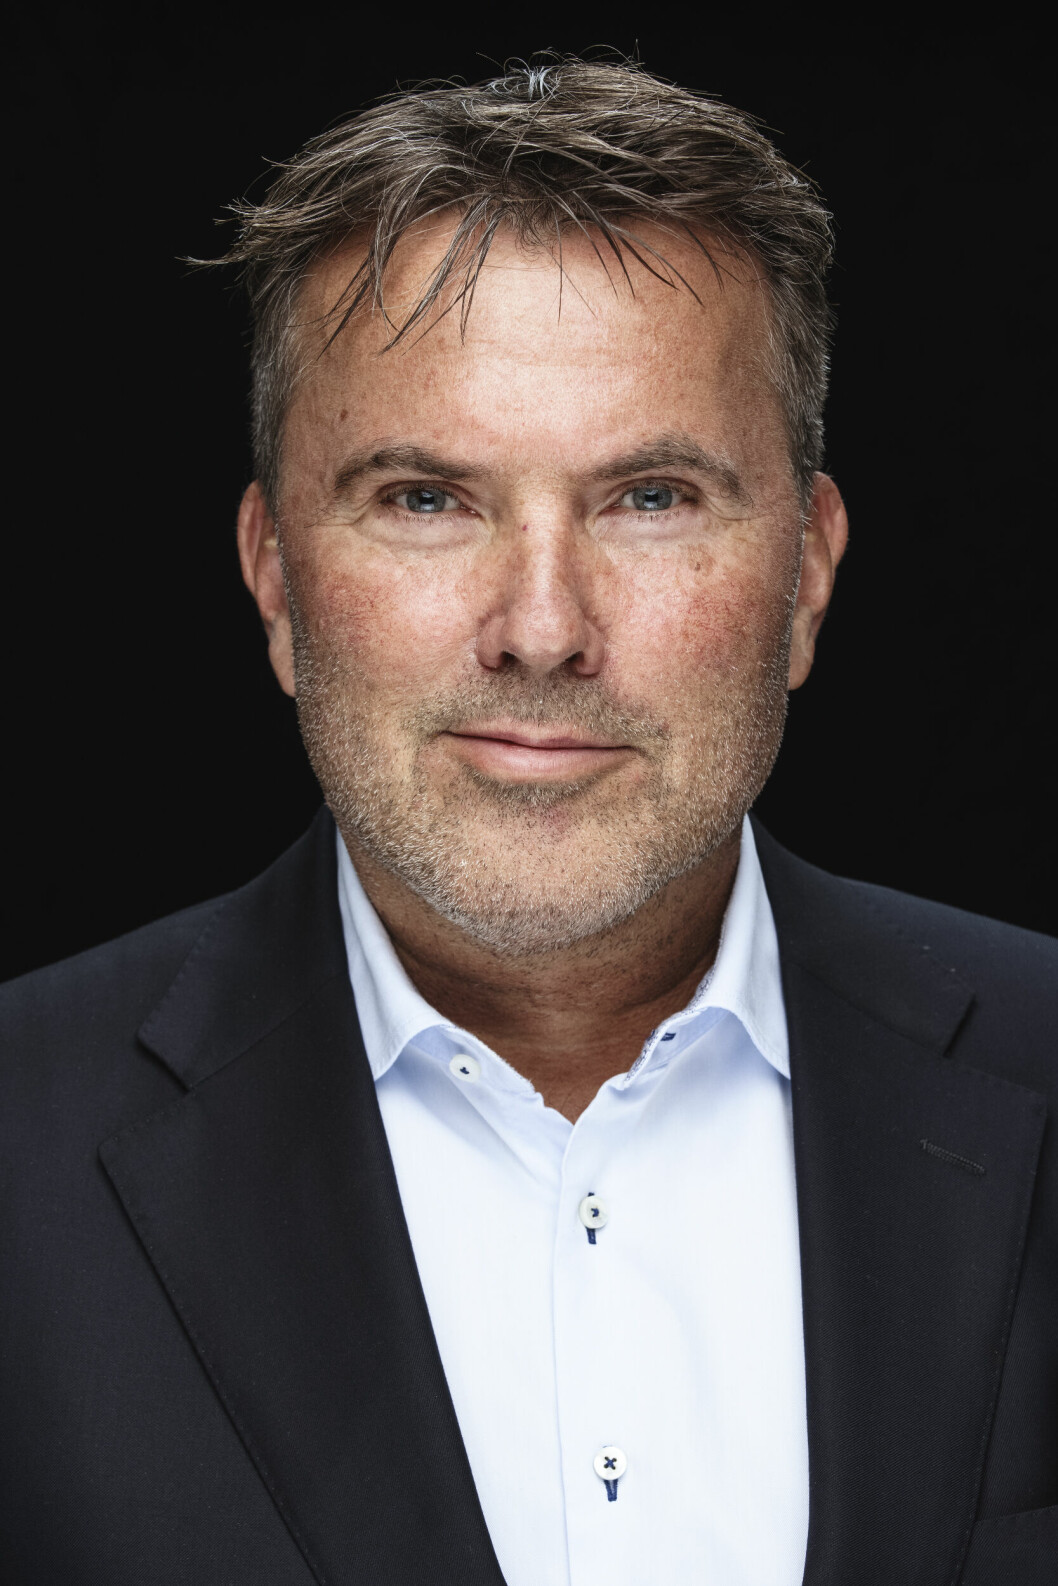 FREMTIDENS ARBEIDSPLASS: Morten Karlsrud er General Manager i Lenovo Norden. I denne kommentaren skriver han om hvordan fremtidens arbeidsplass kan bli seende ut. (Foto: Kilian Munch)